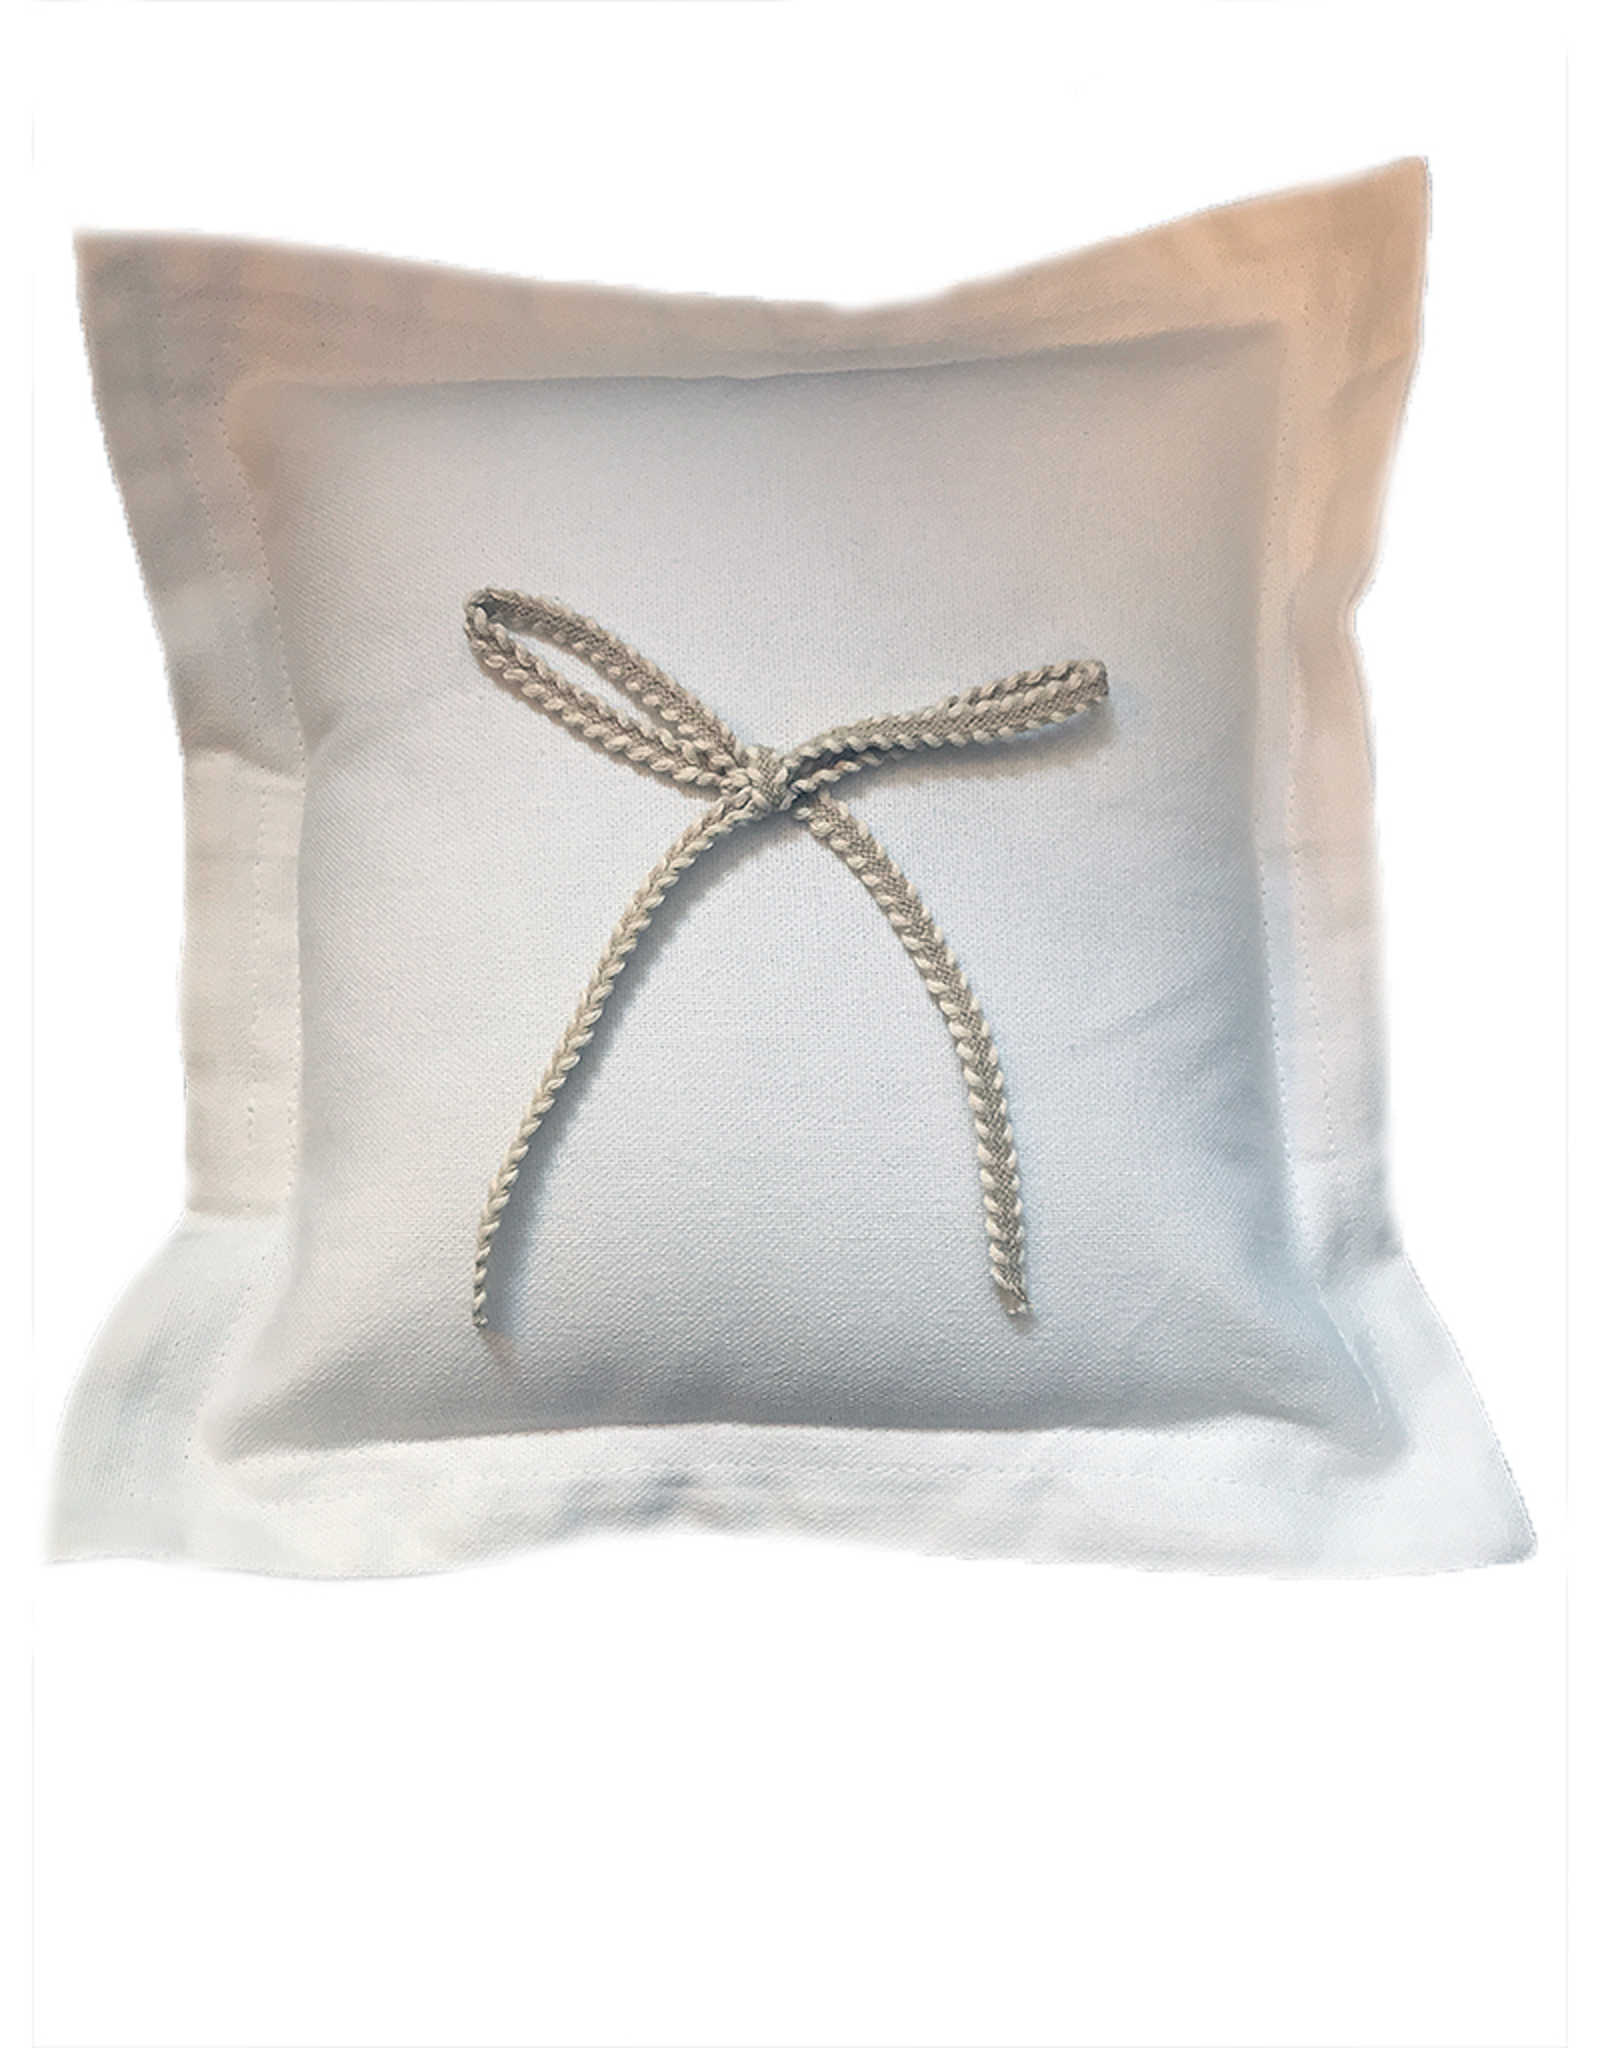 MFH Wedding Ring Bearer Pillow 8x8 White Cotton W Jute Bow